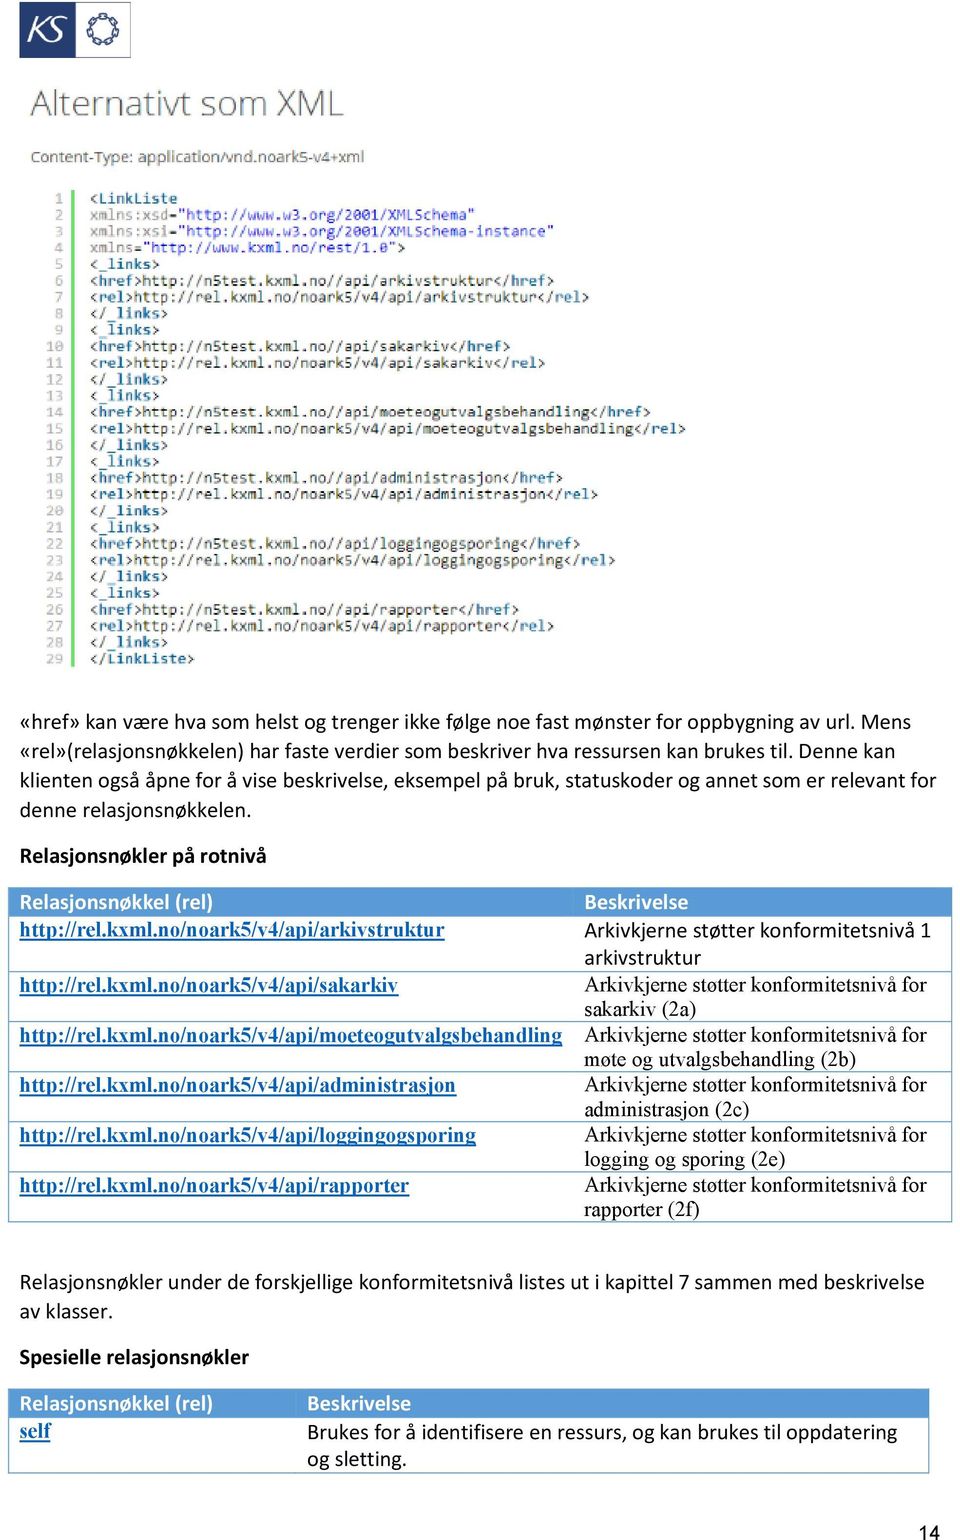 Relasjonsnøkler på rotnivå Relasjonsnøkkel (rel) Beskrivelse http://rel.kxml.no/noark5/v4/api/arkivstruktur Arkivkjerne støtter konformitetsnivå 1 arkivstruktur http://rel.kxml.no/noark5/v4/api/sakarkiv Arkivkjerne støtter konformitetsnivå for sakarkiv (2a) http://rel.